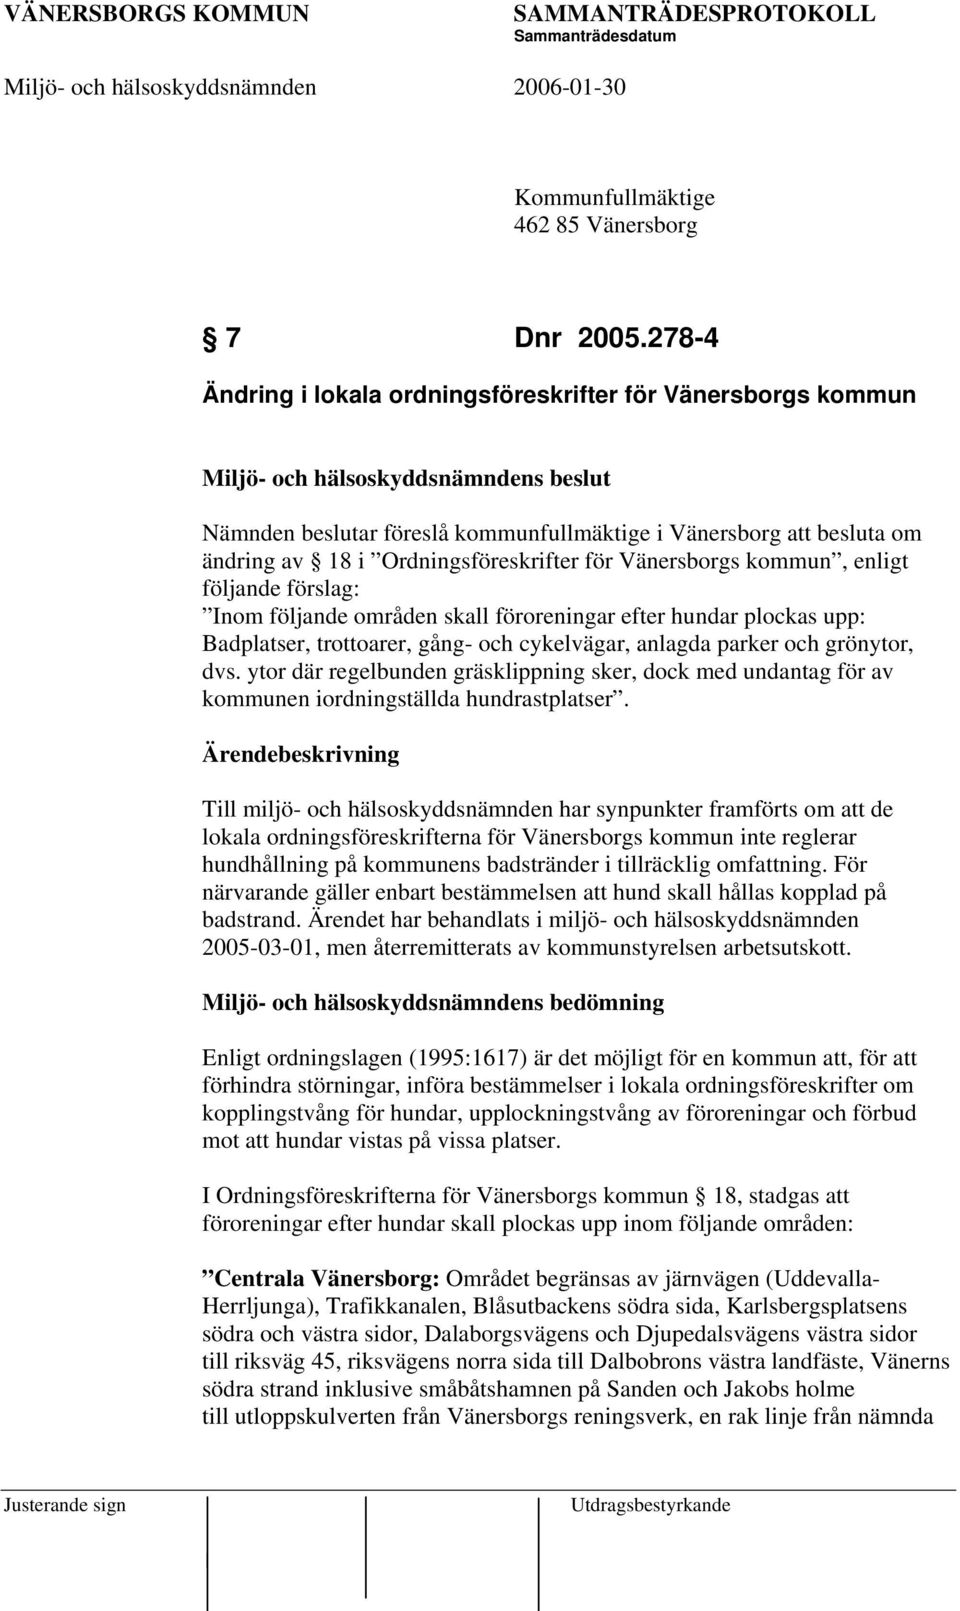 Ordningsföreskrifter för Vänersborgs kommun, enligt följande förslag: Inom följande områden skall föroreningar efter hundar plockas upp: Badplatser, trottoarer, gång- och cykelvägar, anlagda parker